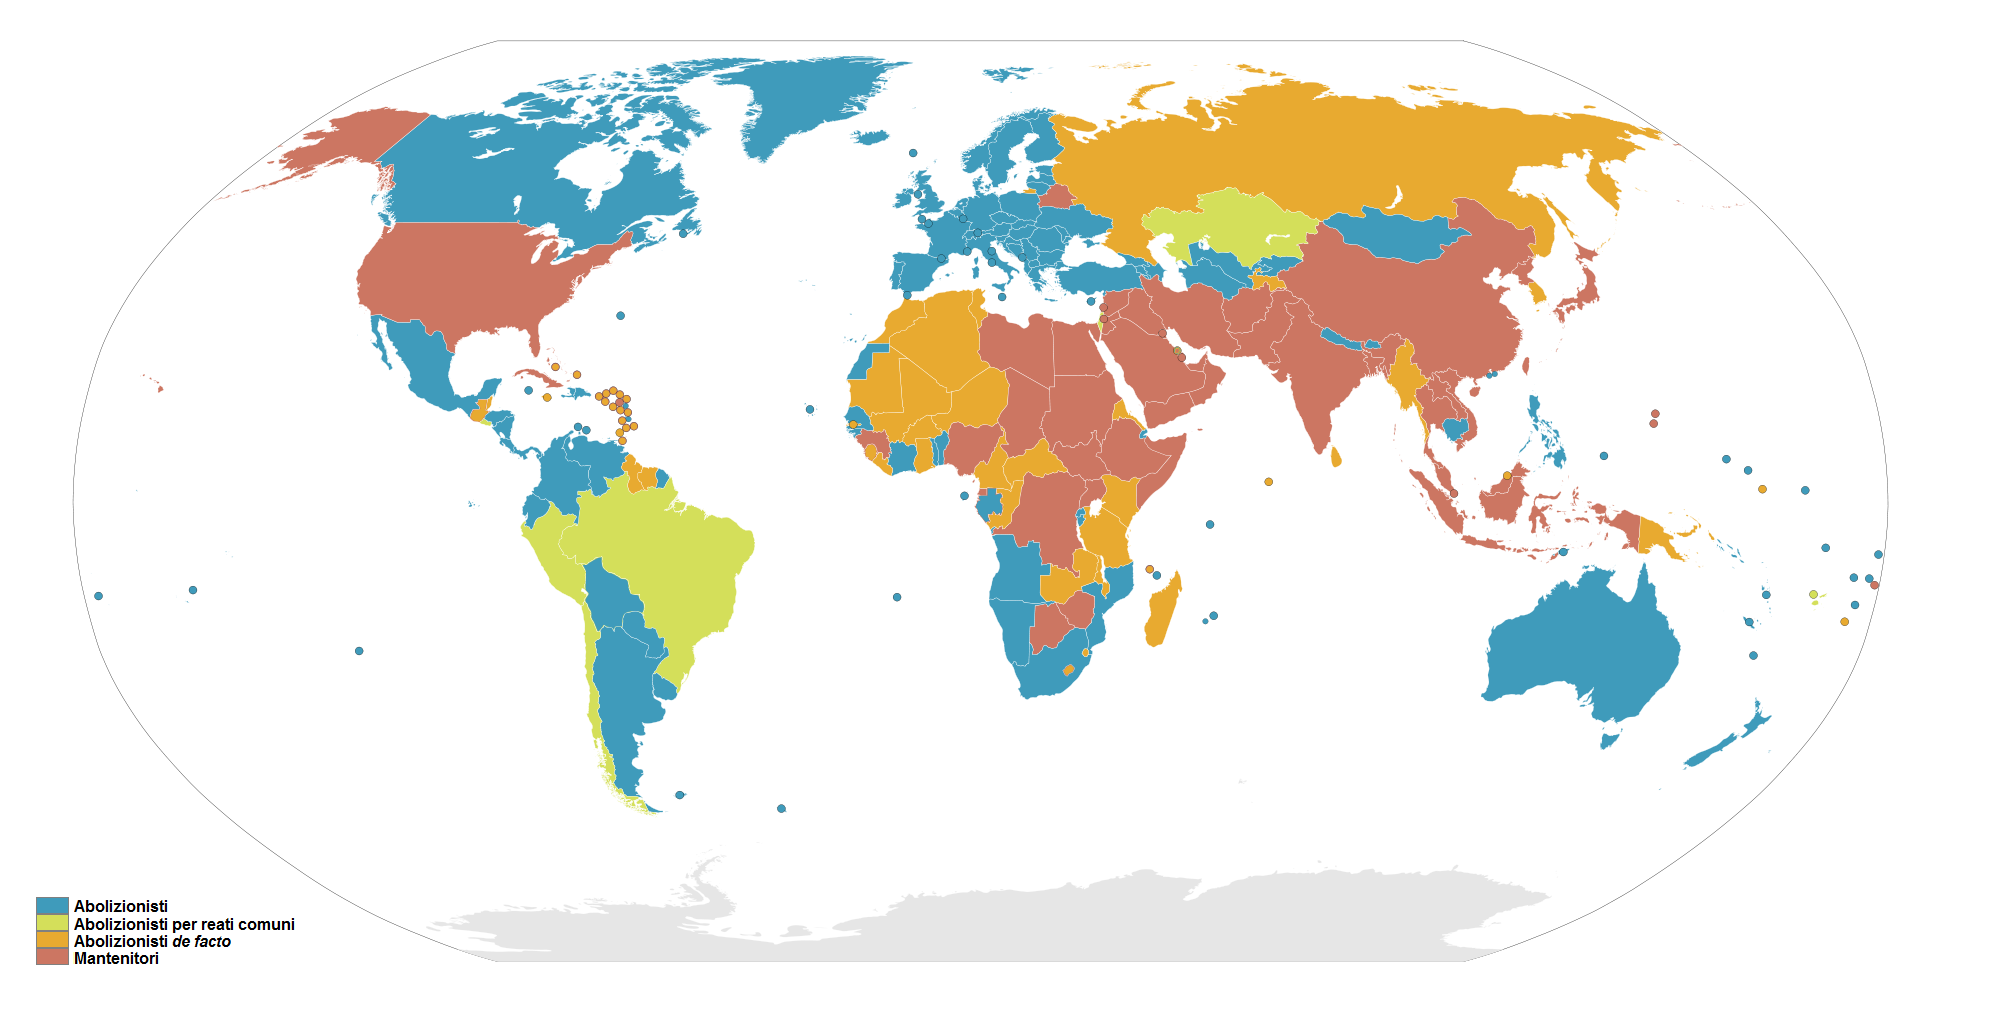 La pena di morte nel mondo - fonte wiki